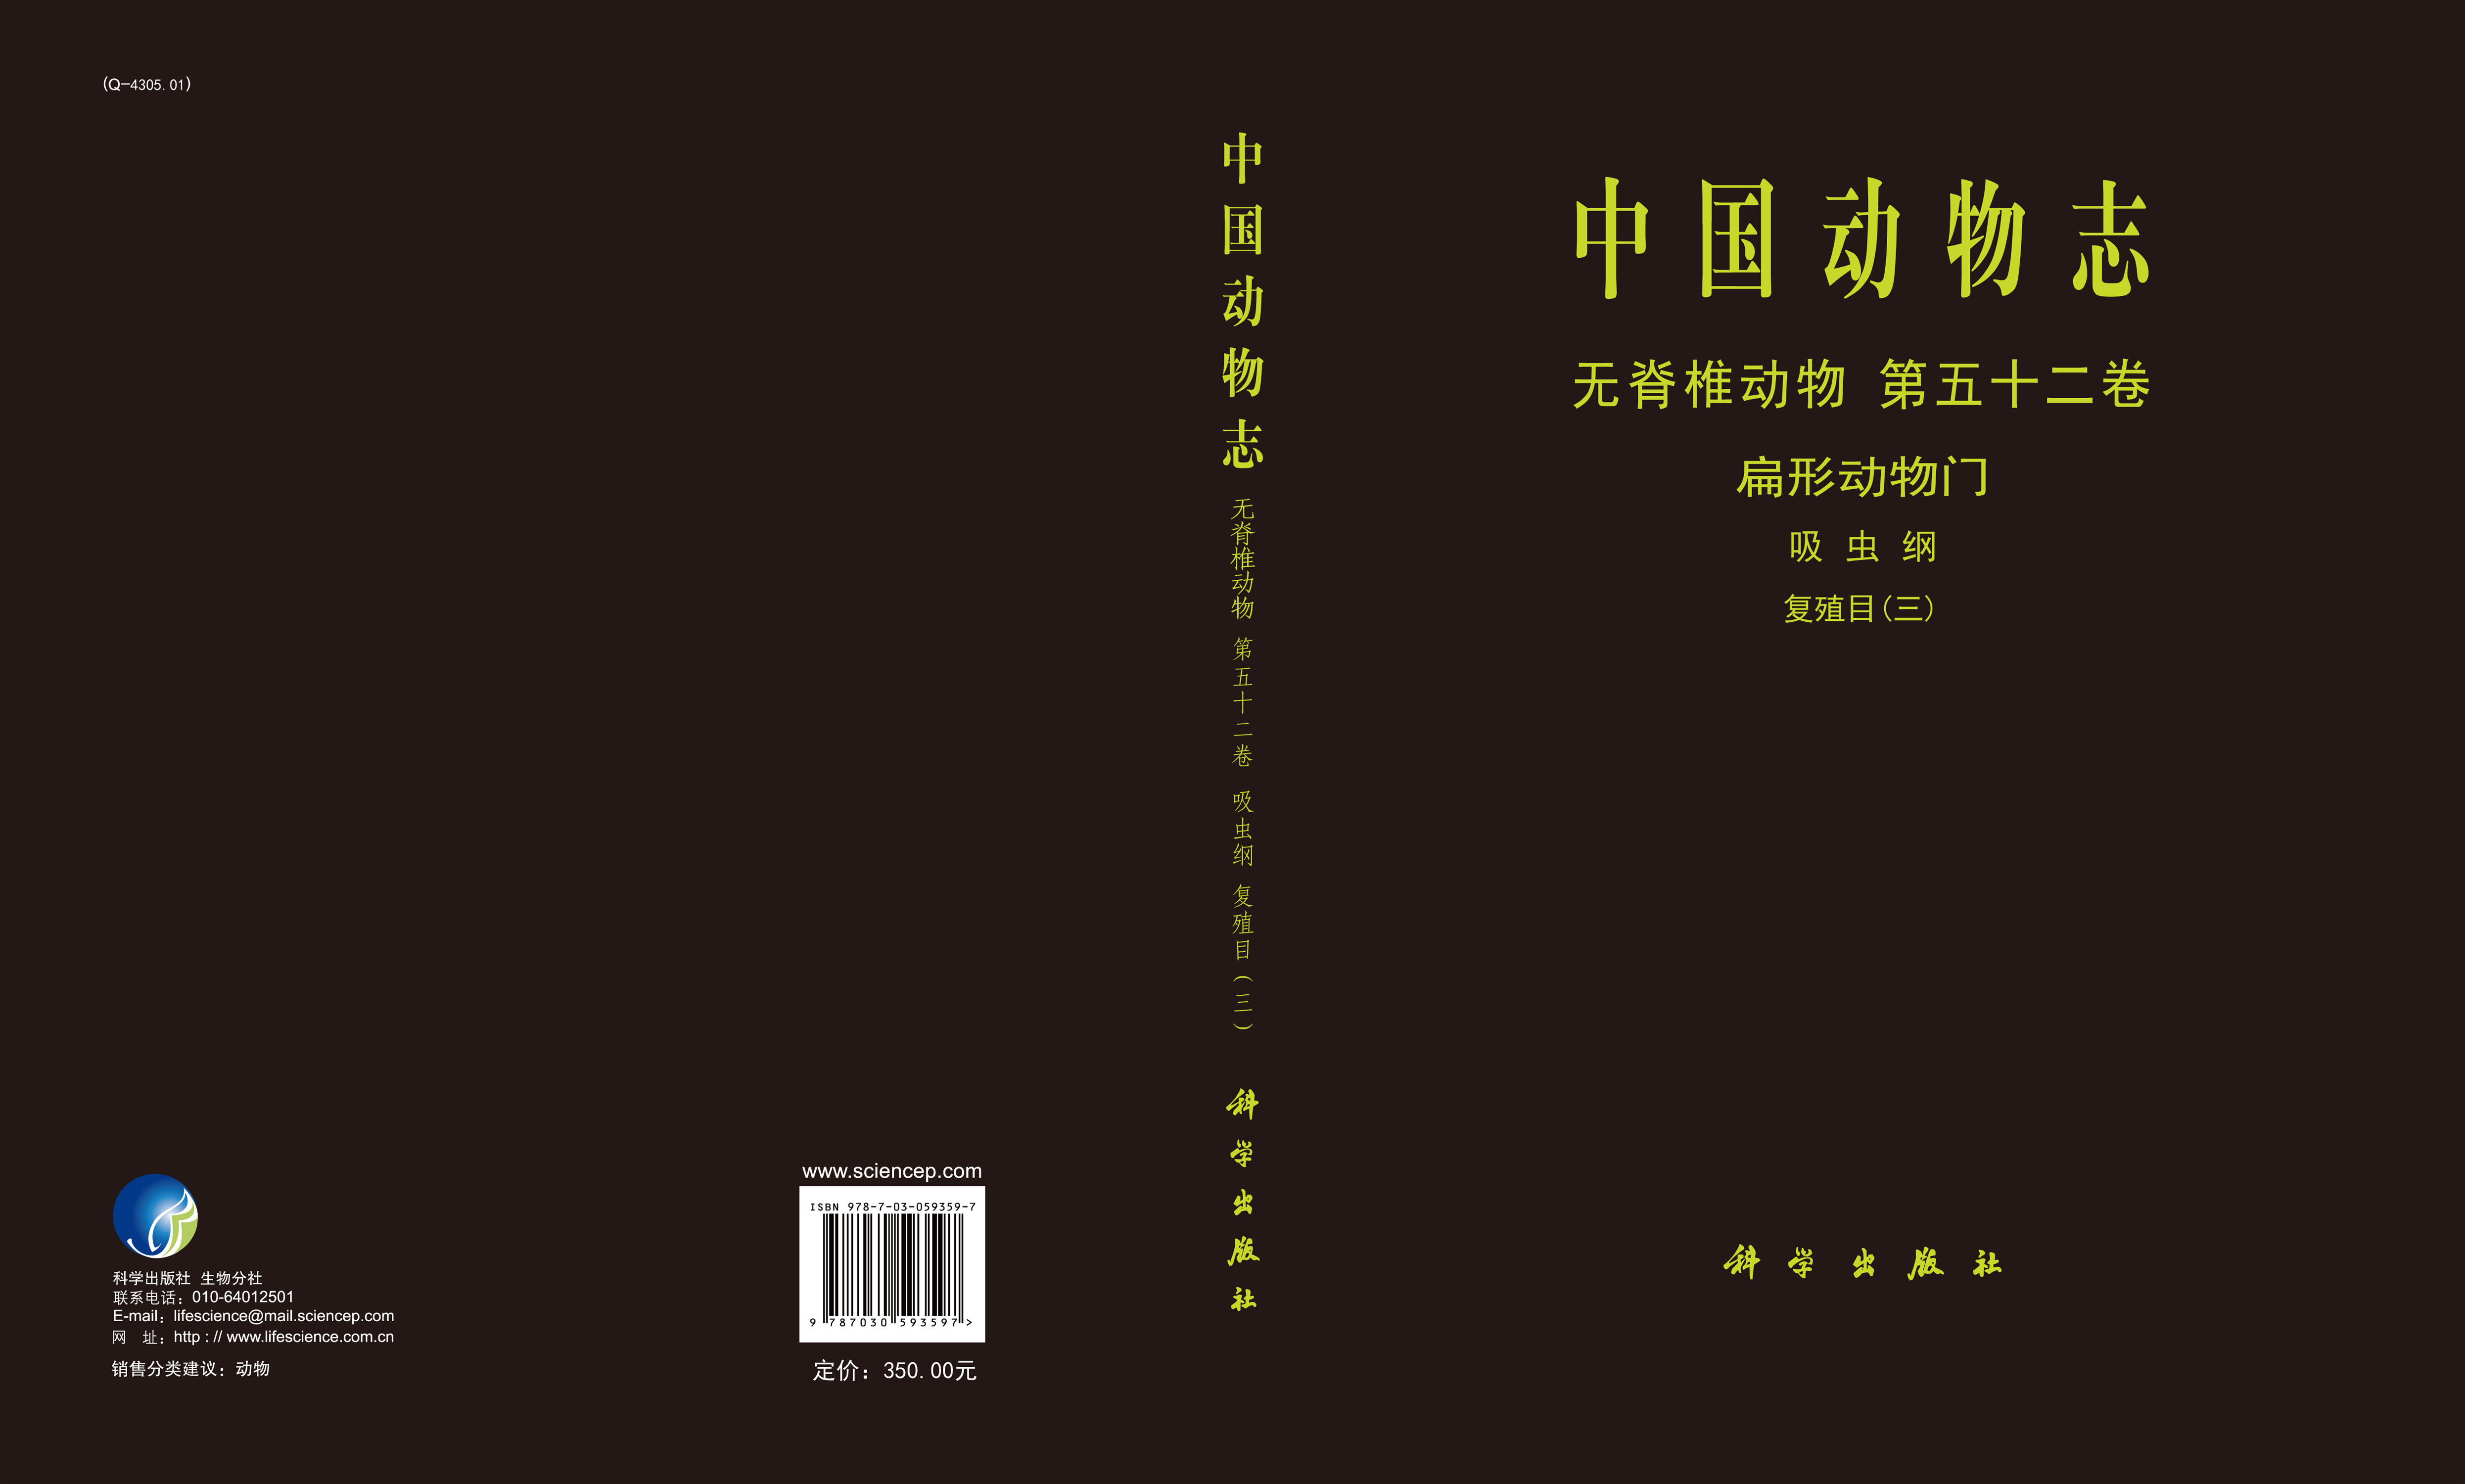 中国动物志 无脊椎动物 第五十二卷 扁形动物门 吸虫纲 复殖目（三）